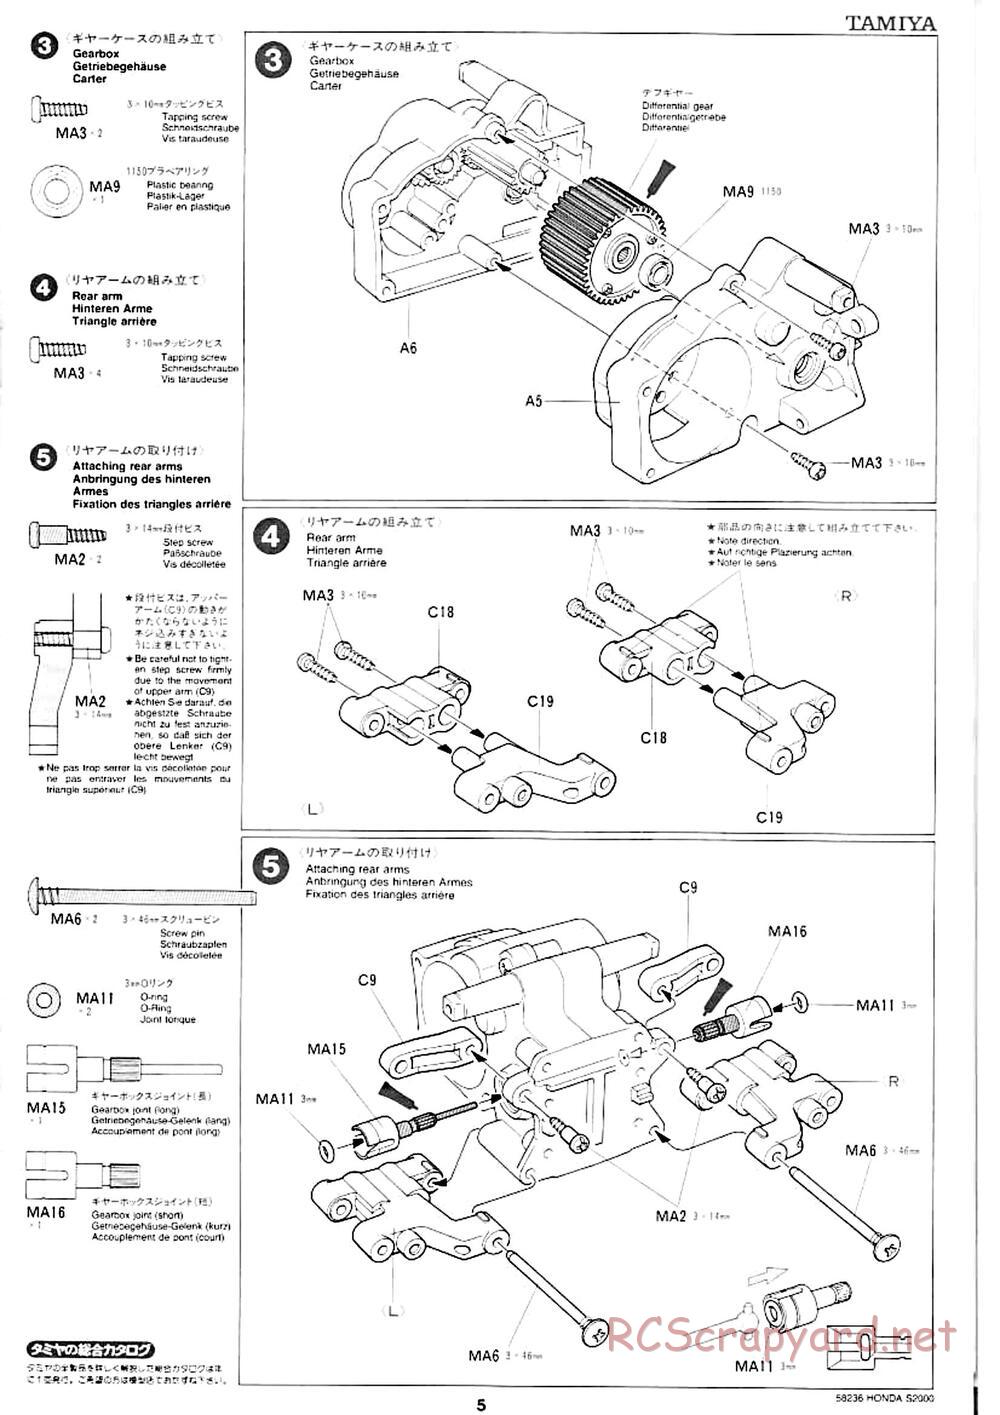 Tamiya - Honda S2000 - M04L Chassis - Manual - Page 3